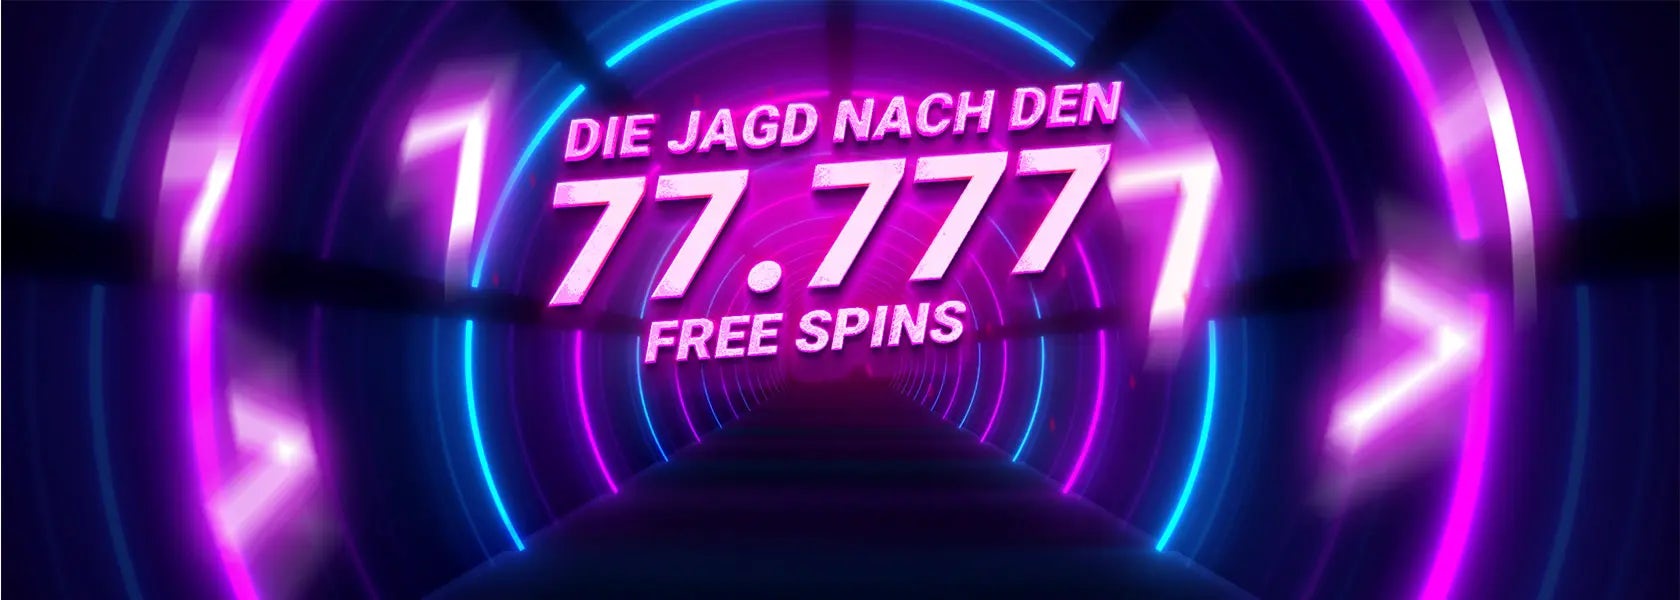 jagd-nach-den-77777-free-spins-23032024